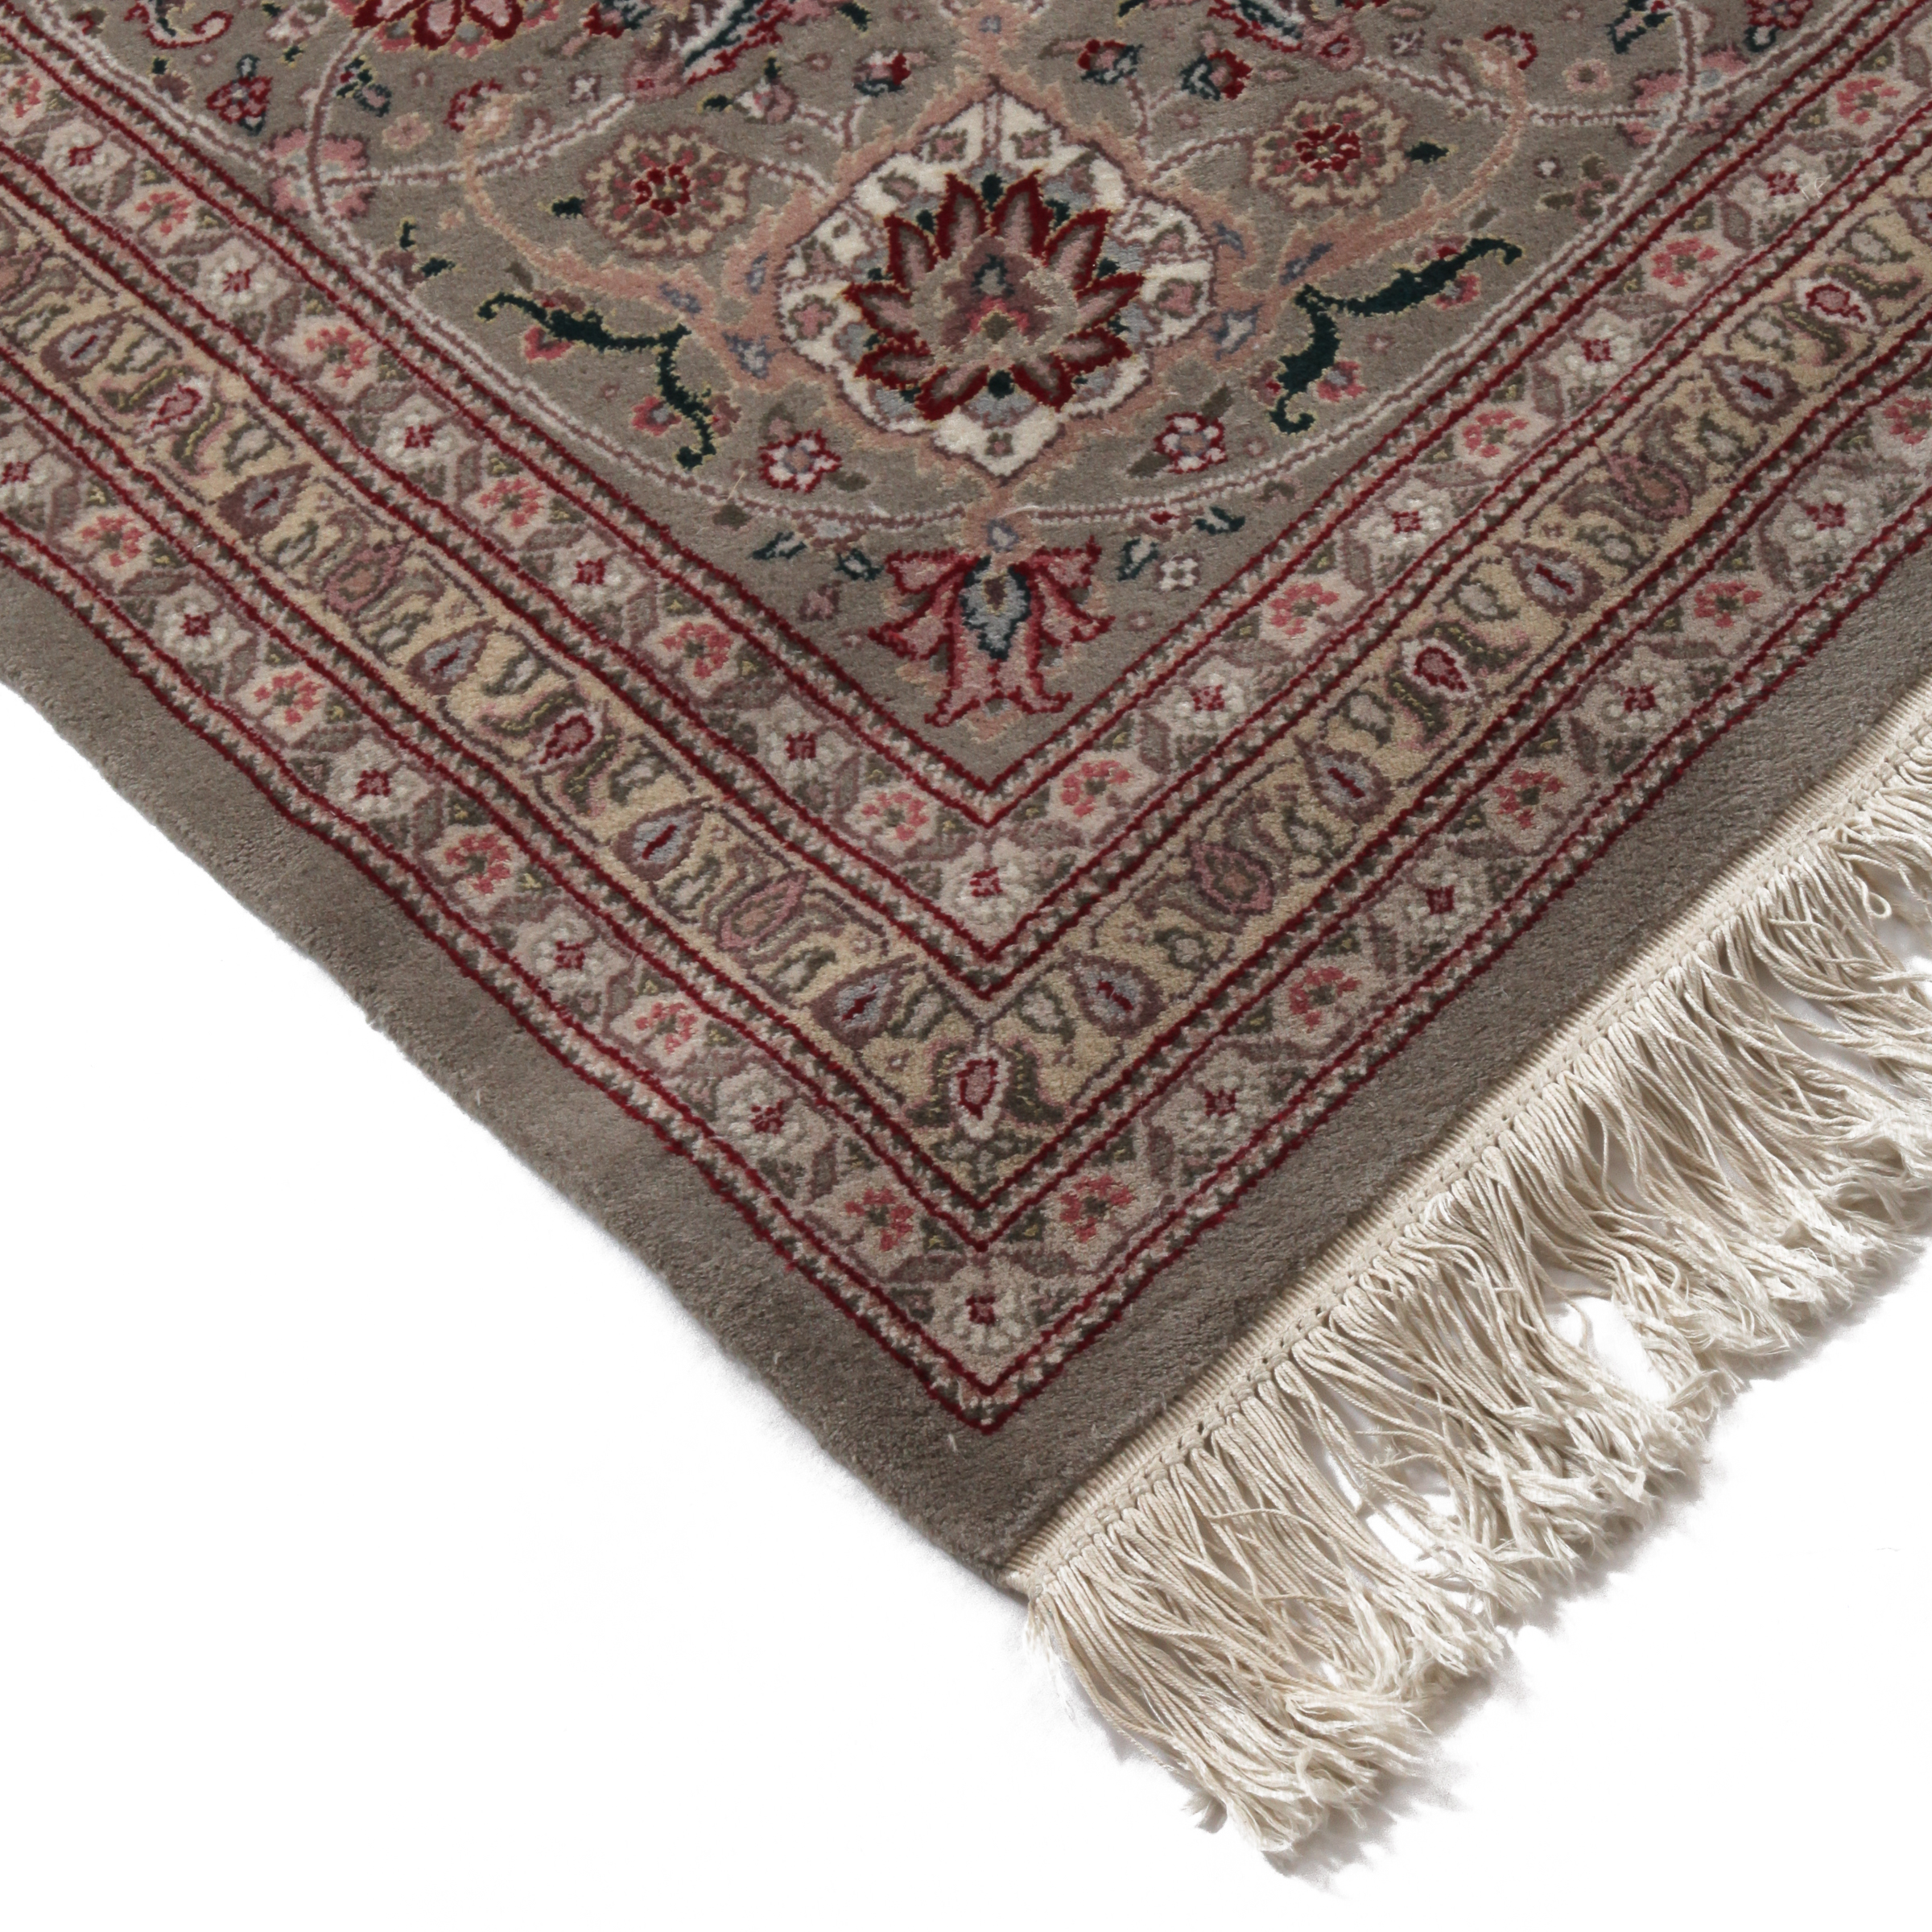 Fine Indo Tabriz Carpet, late 20th cenutry